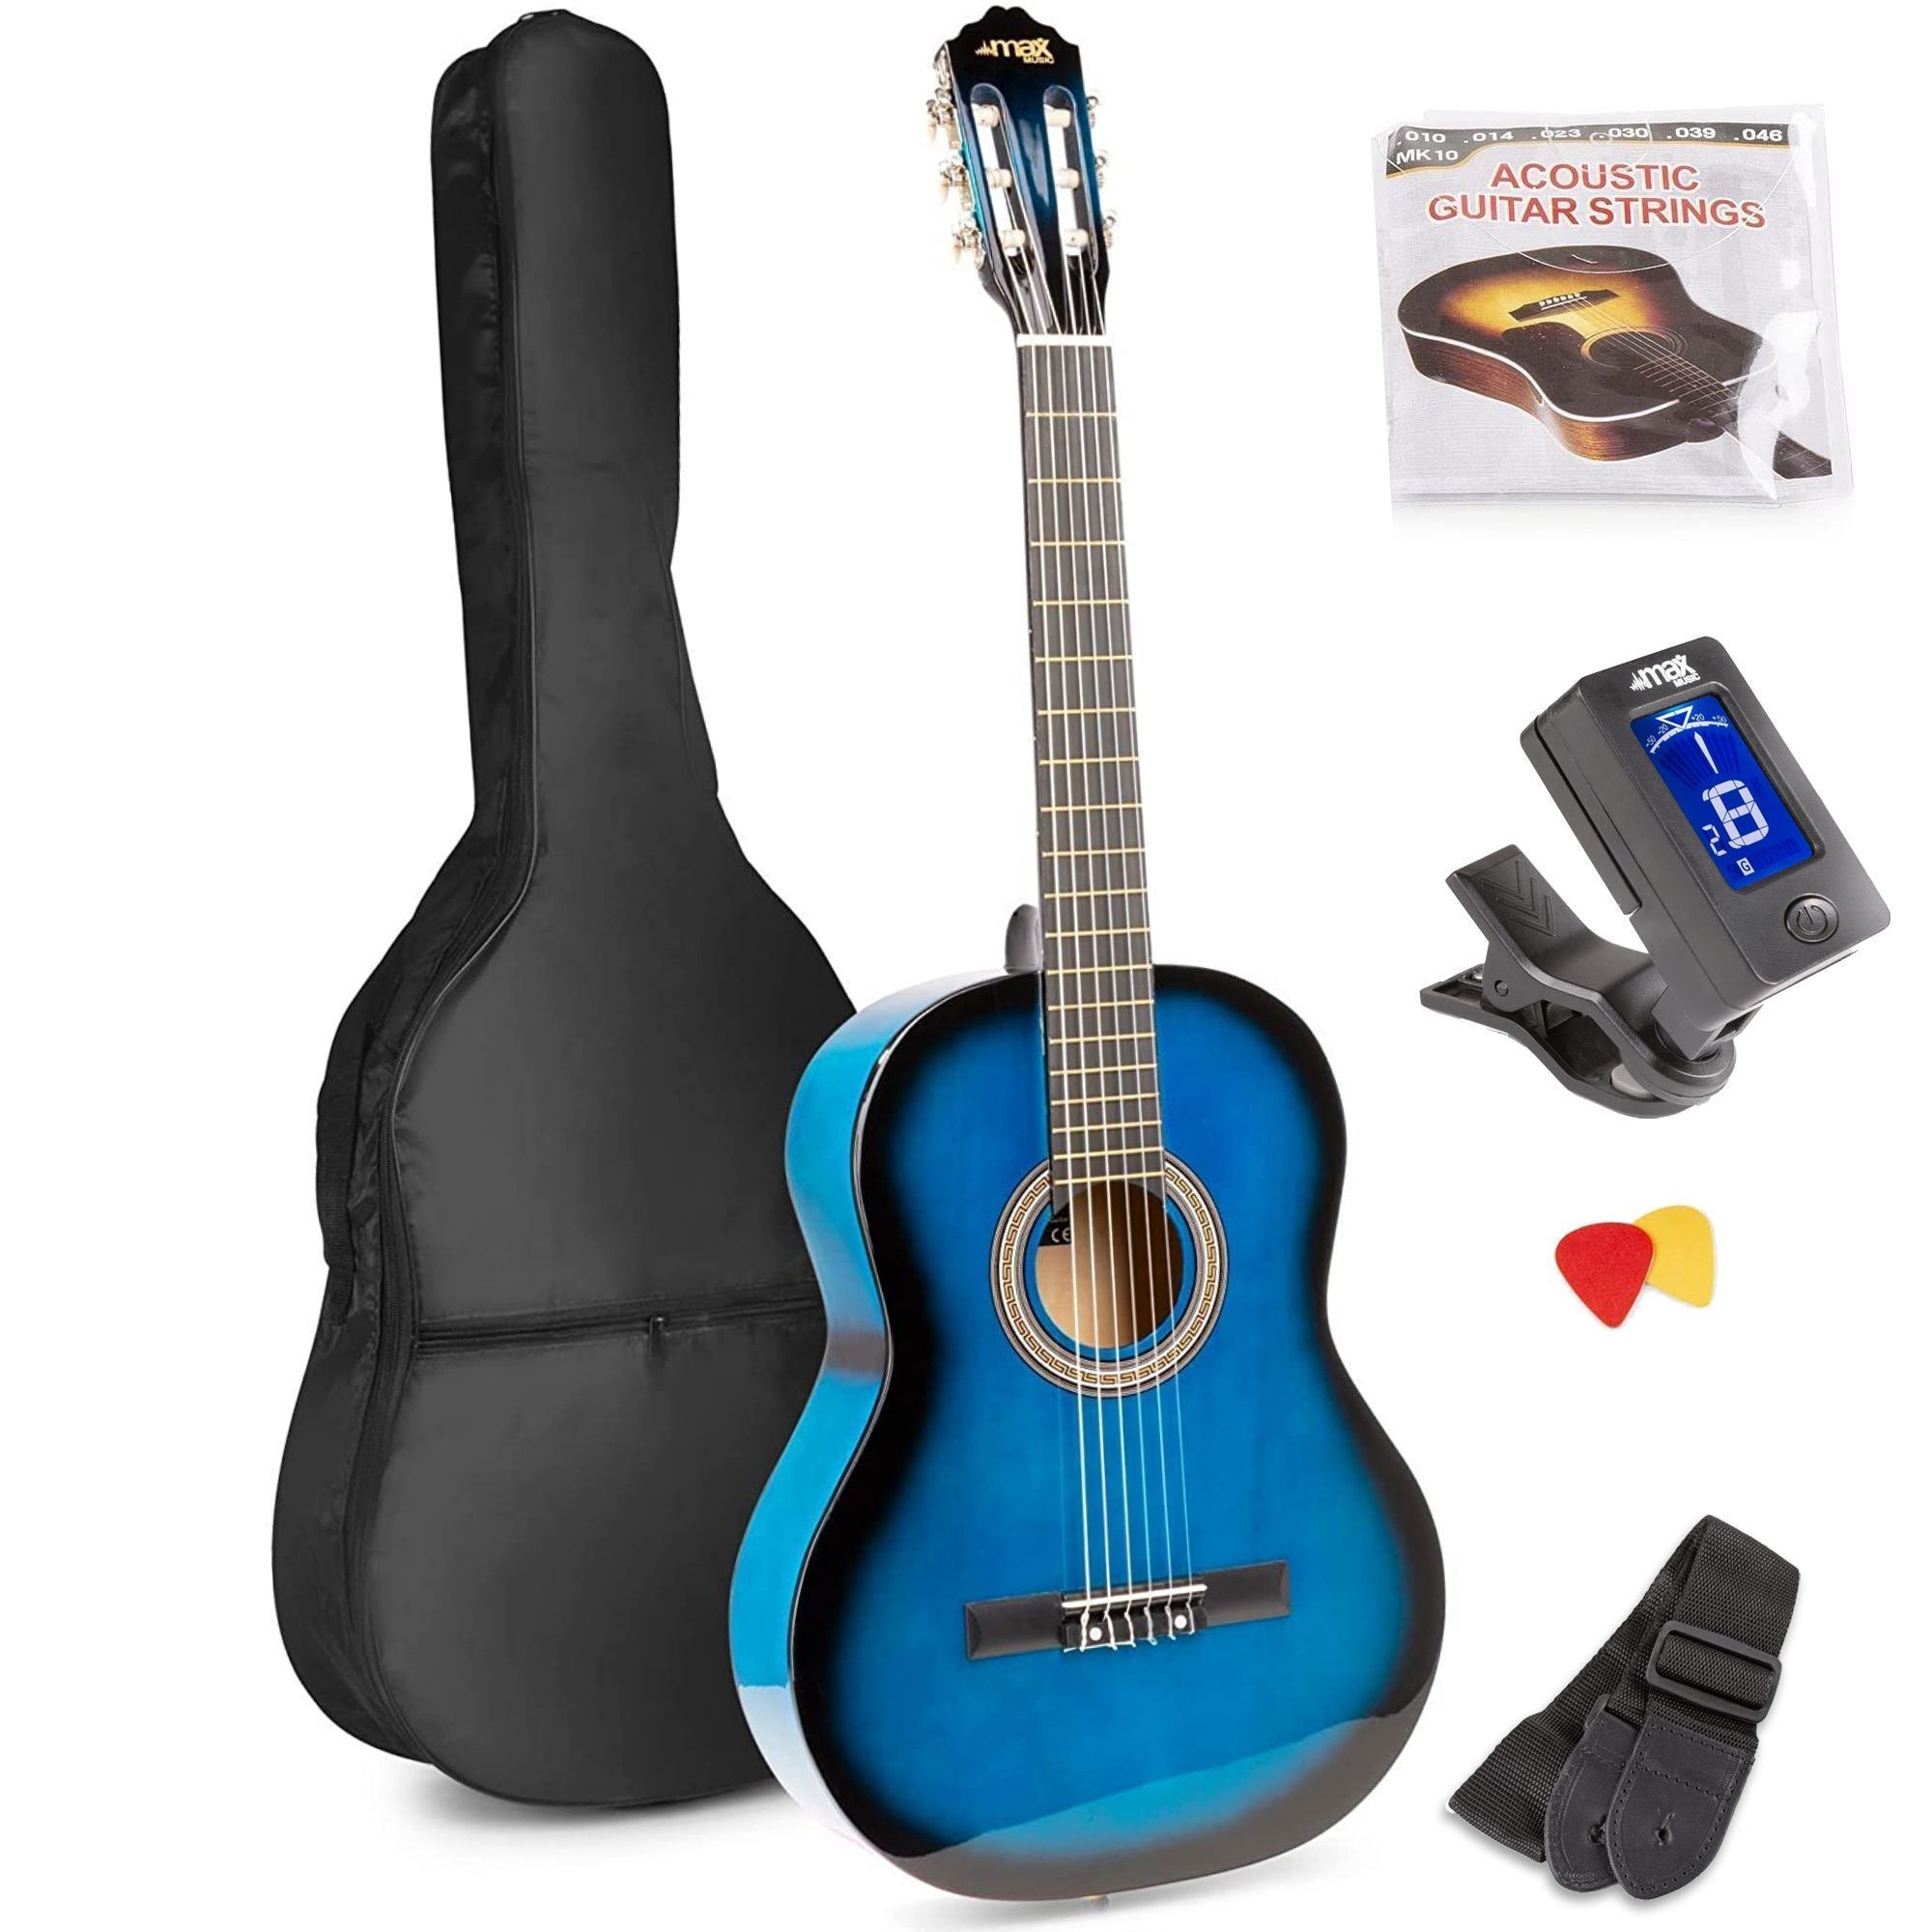 Geplooid hout broeden MAX SoloArt klassieke akoestische gitaar (39") starterset - Blauw kopen?